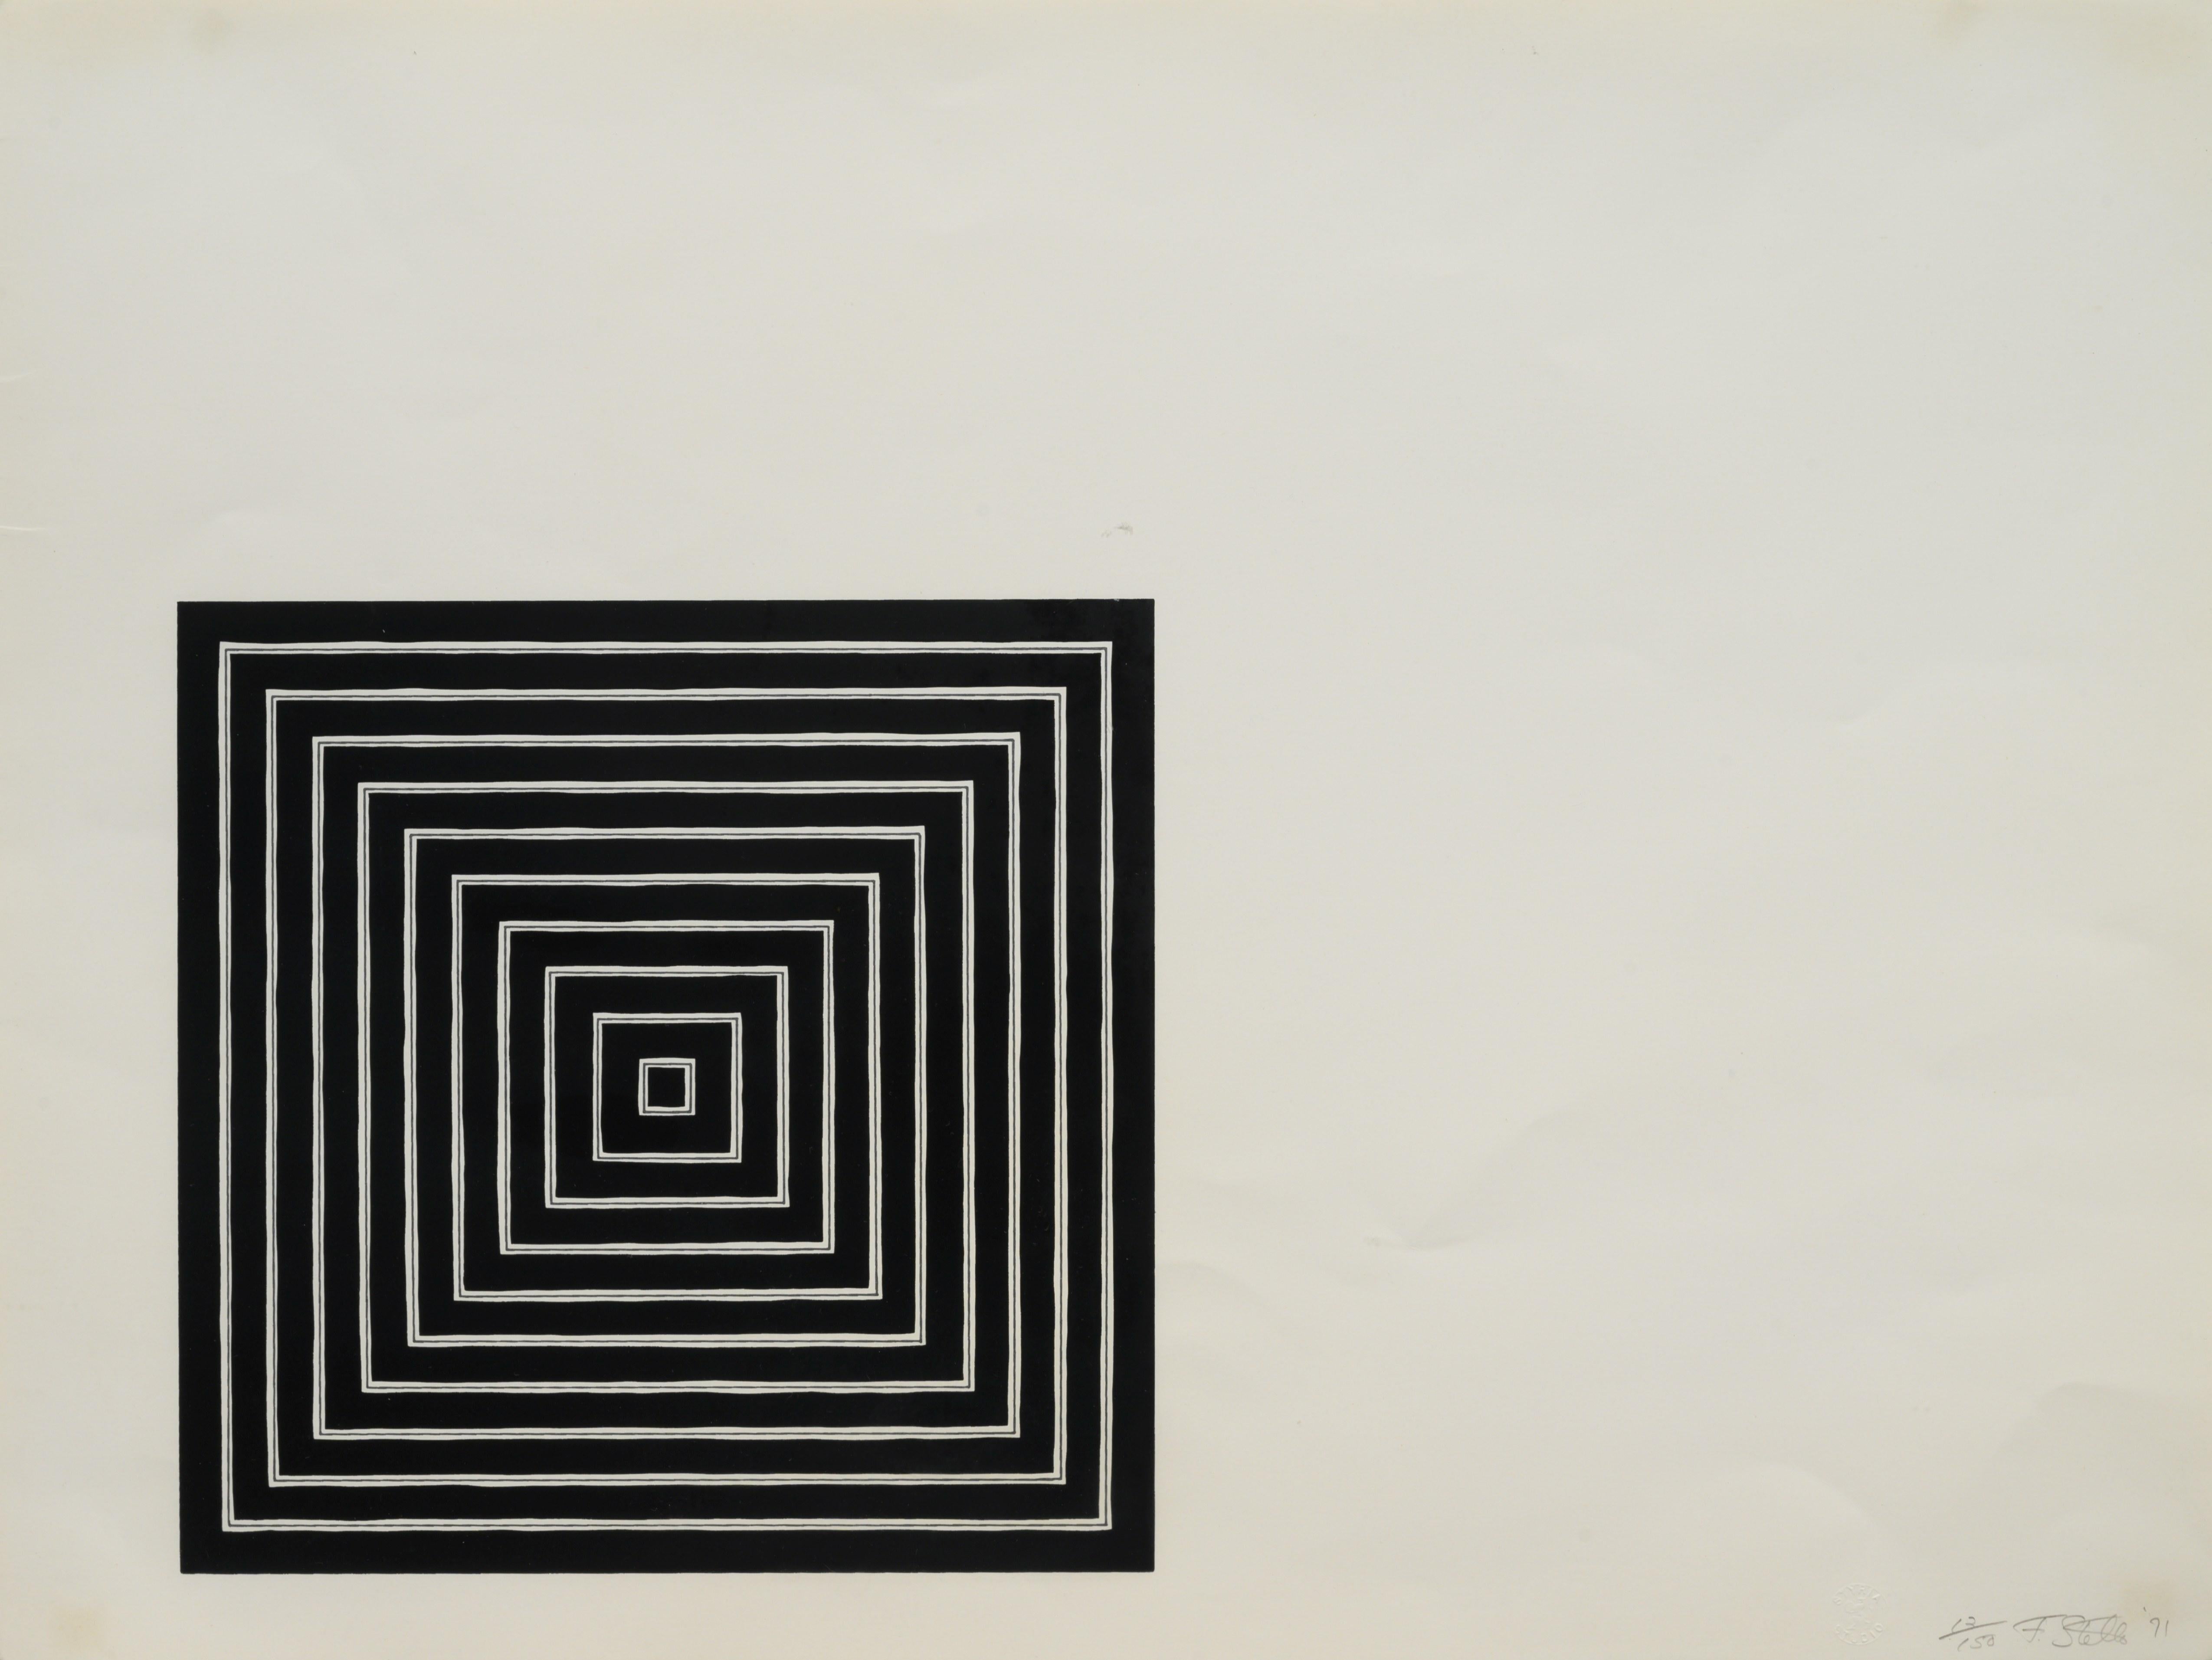 FRANK STELLA (1936-heute)

Siebdruck in Schwarz und Grau auf Fabriano-Papier, vollrandig. Signiert, datiert und nummeriert 13/150 in Bleistift unten rechts. Gedruckt von Styria Studio, Inc. in New York, mit dem Blindstempel. Herausgegeben von David